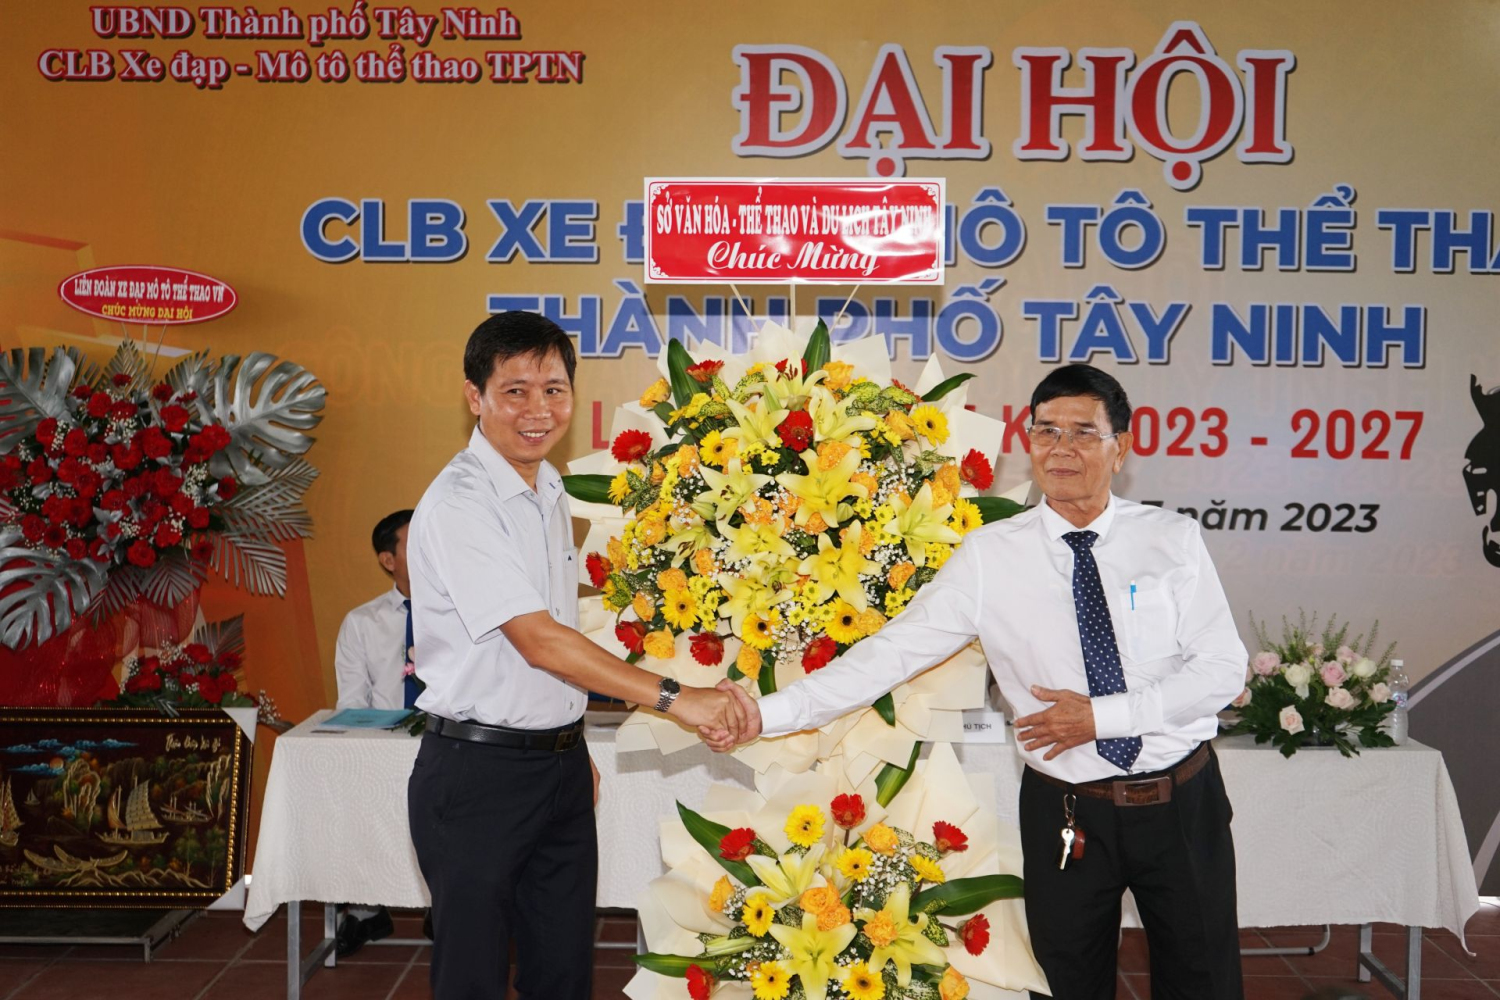 Ông Lê Quang Chánh tặng lẵng hoa chúc mừng Đại hội